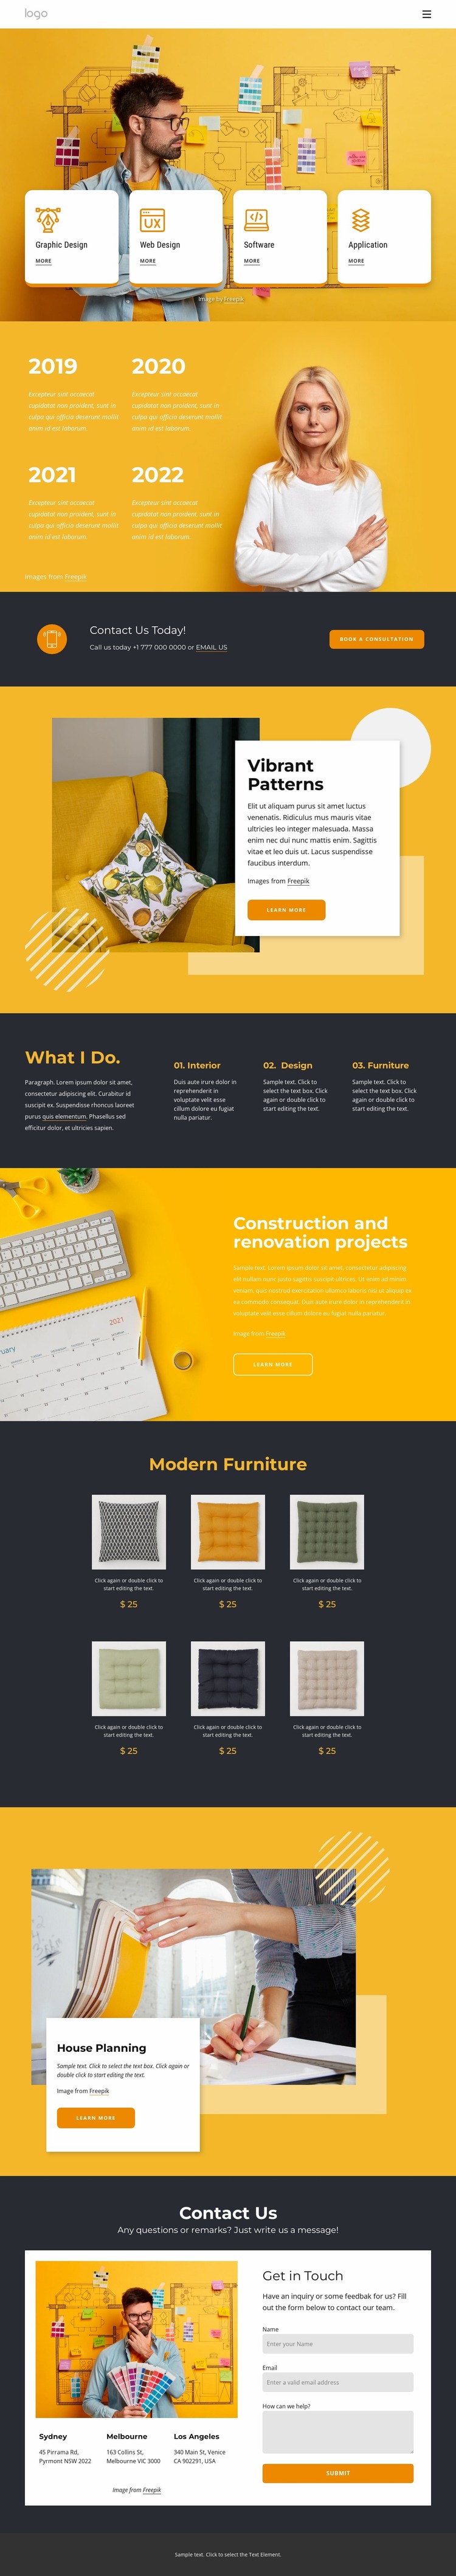 Modern design firm Website Mockup